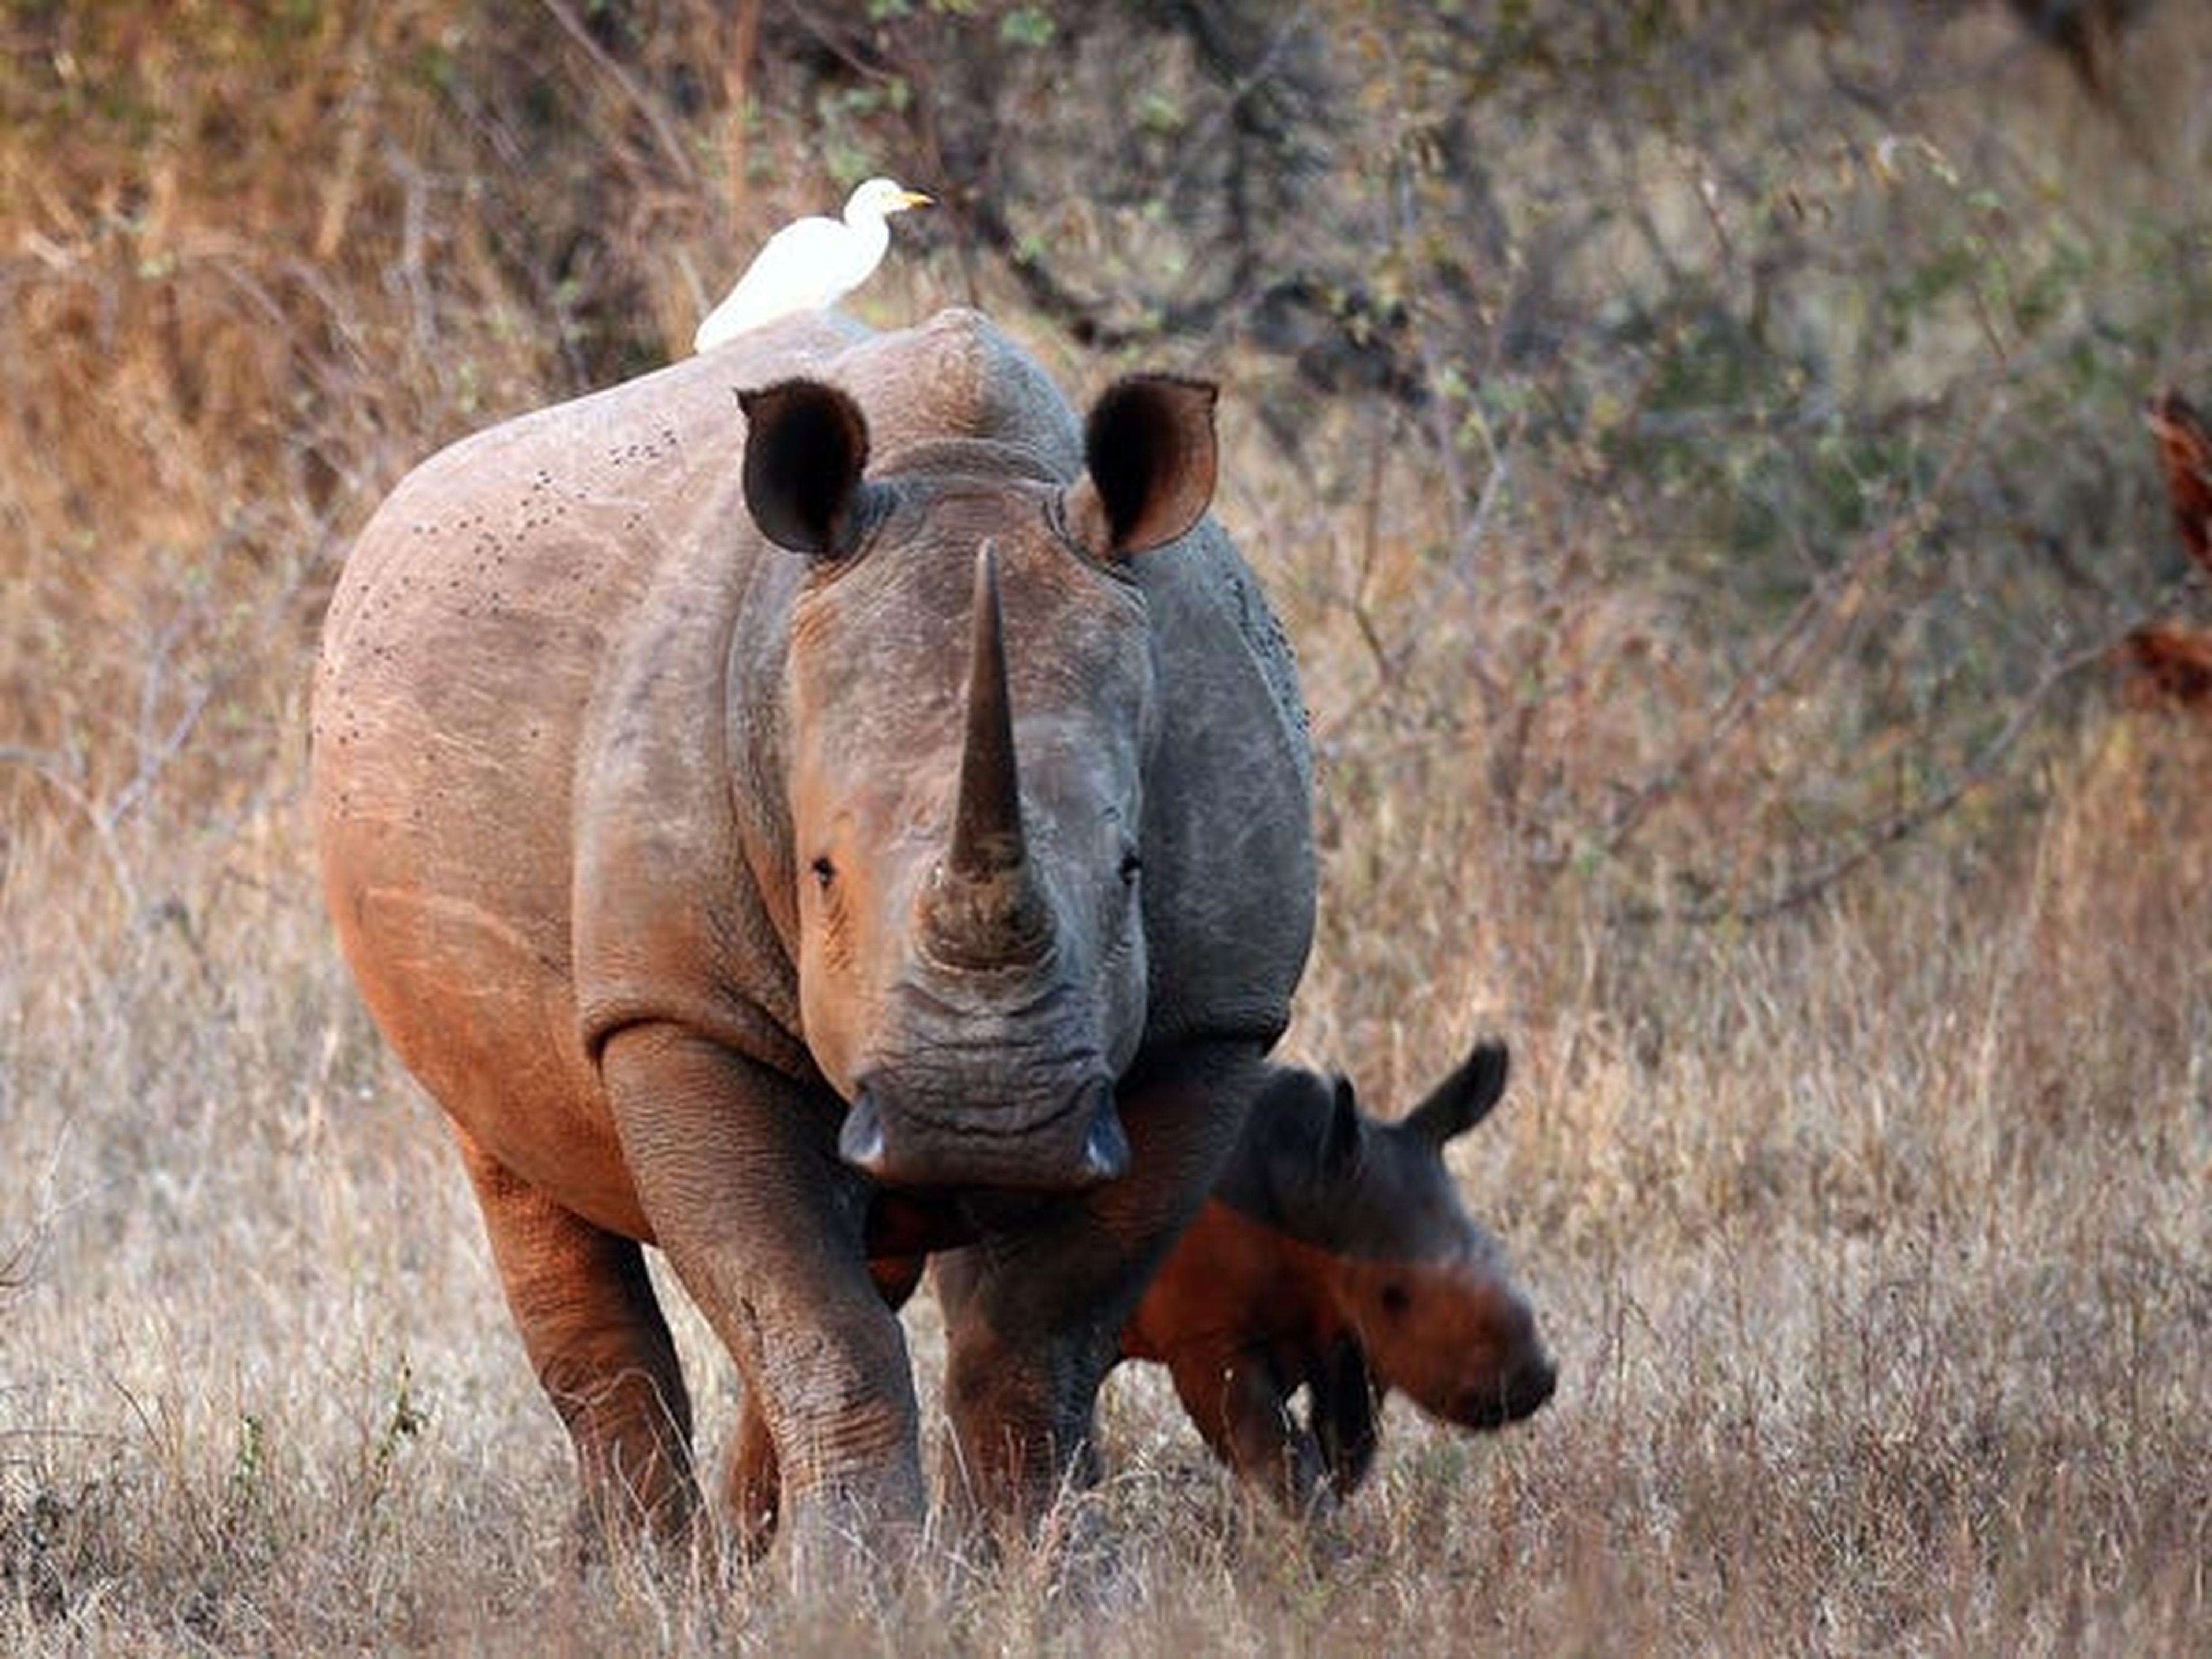 Eric y Donald Trump Jr. son aficionados a la caza, una afición que puede resultar muy cara. Por ejemplo, cazar un rinoceronte blanco cuesta más de 66.000 dólares.